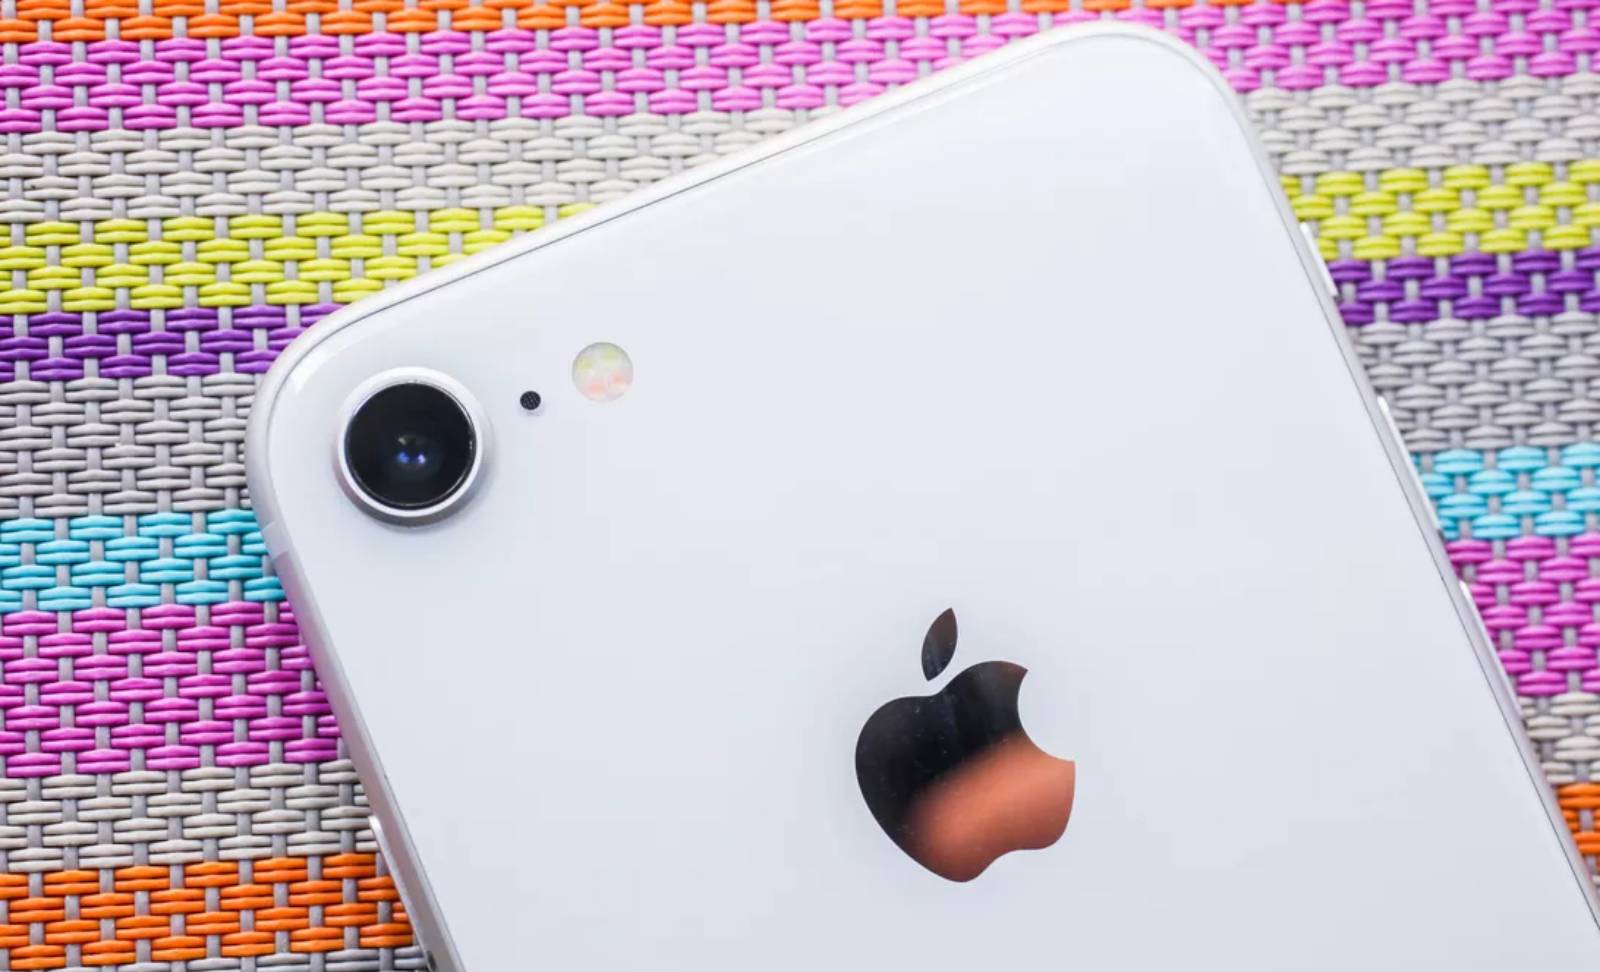 iPhone 9-lanceringsconferentie geannuleerd